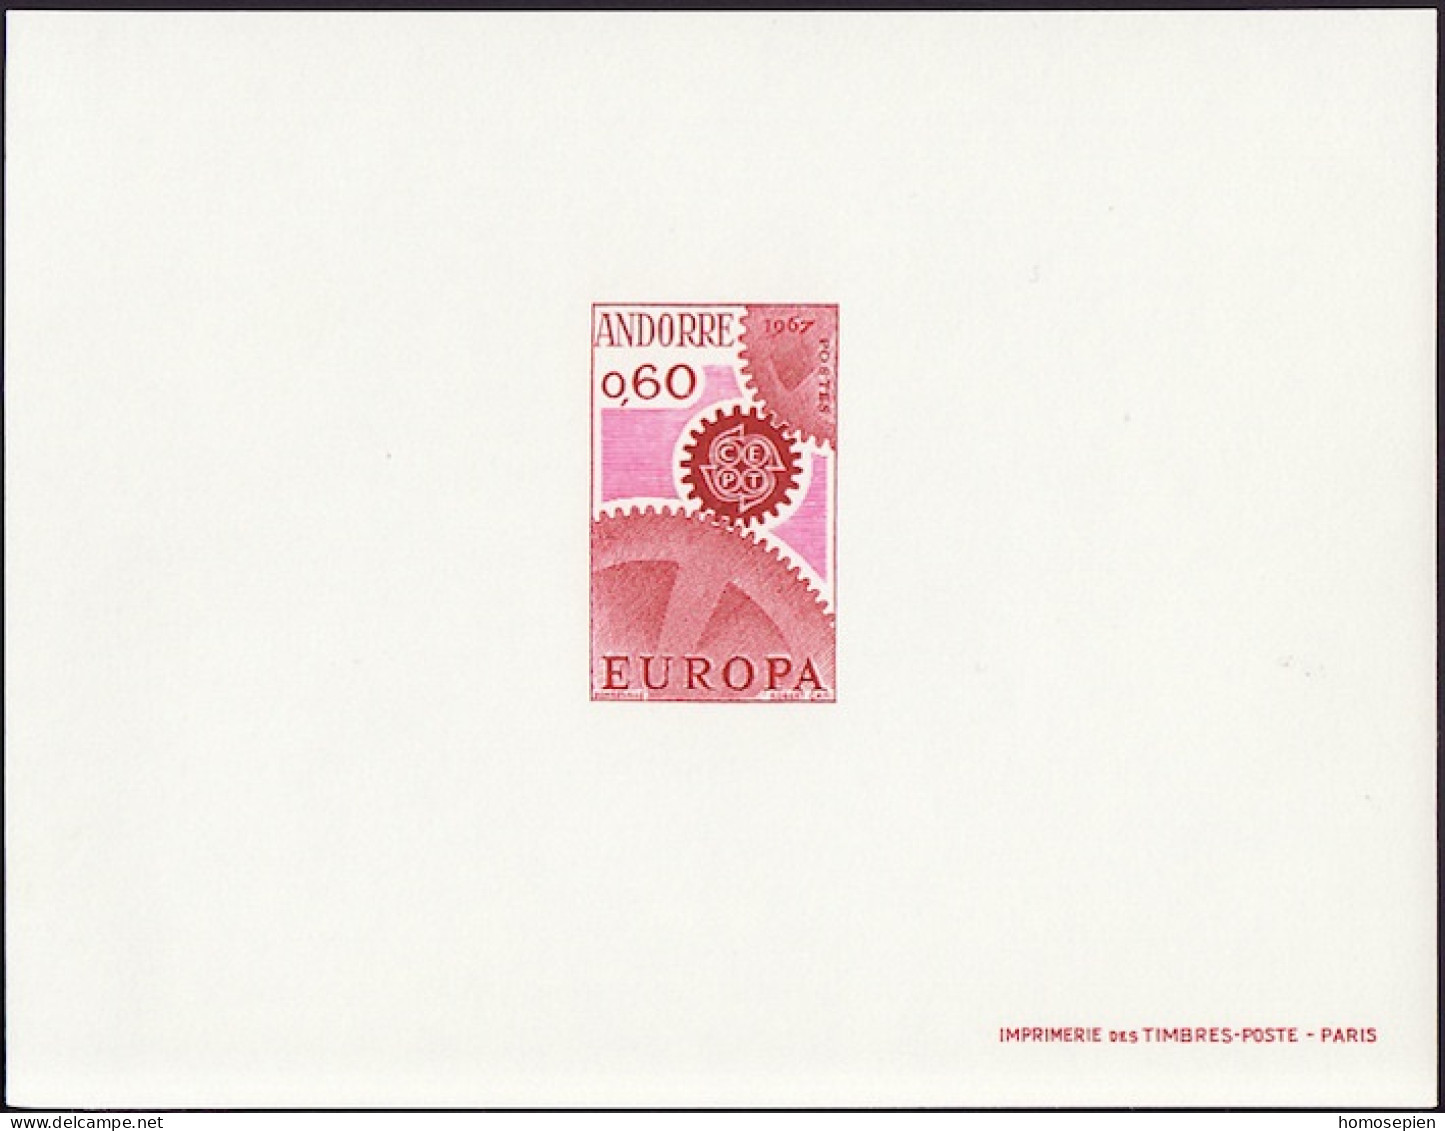 Andorre Français - Andorra épreuve 1967 Y&T N°EL180 - Michel N°DP200 *** - 60c EUROPA - Storia Postale